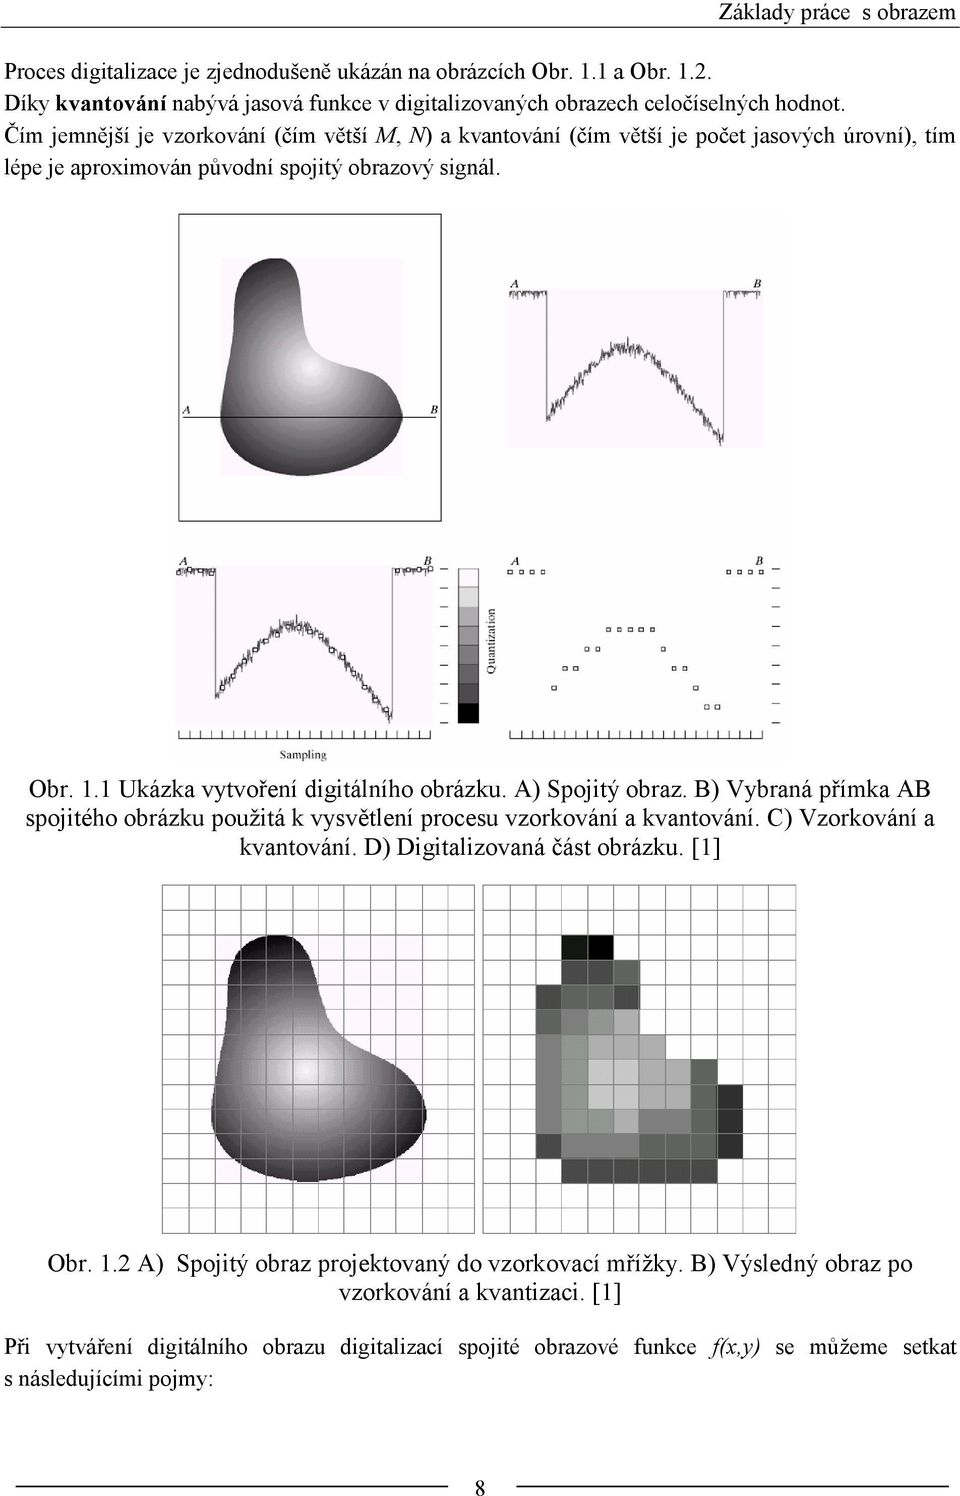 A) Spojitý obraz. B) Vybraná přímka AB spojitého obrázku použitá k vysvětlení procesu vzorkování a kvantování. C) Vzorkování a kvantování. D) Digitalizovaná část obrázku. [] Obr.